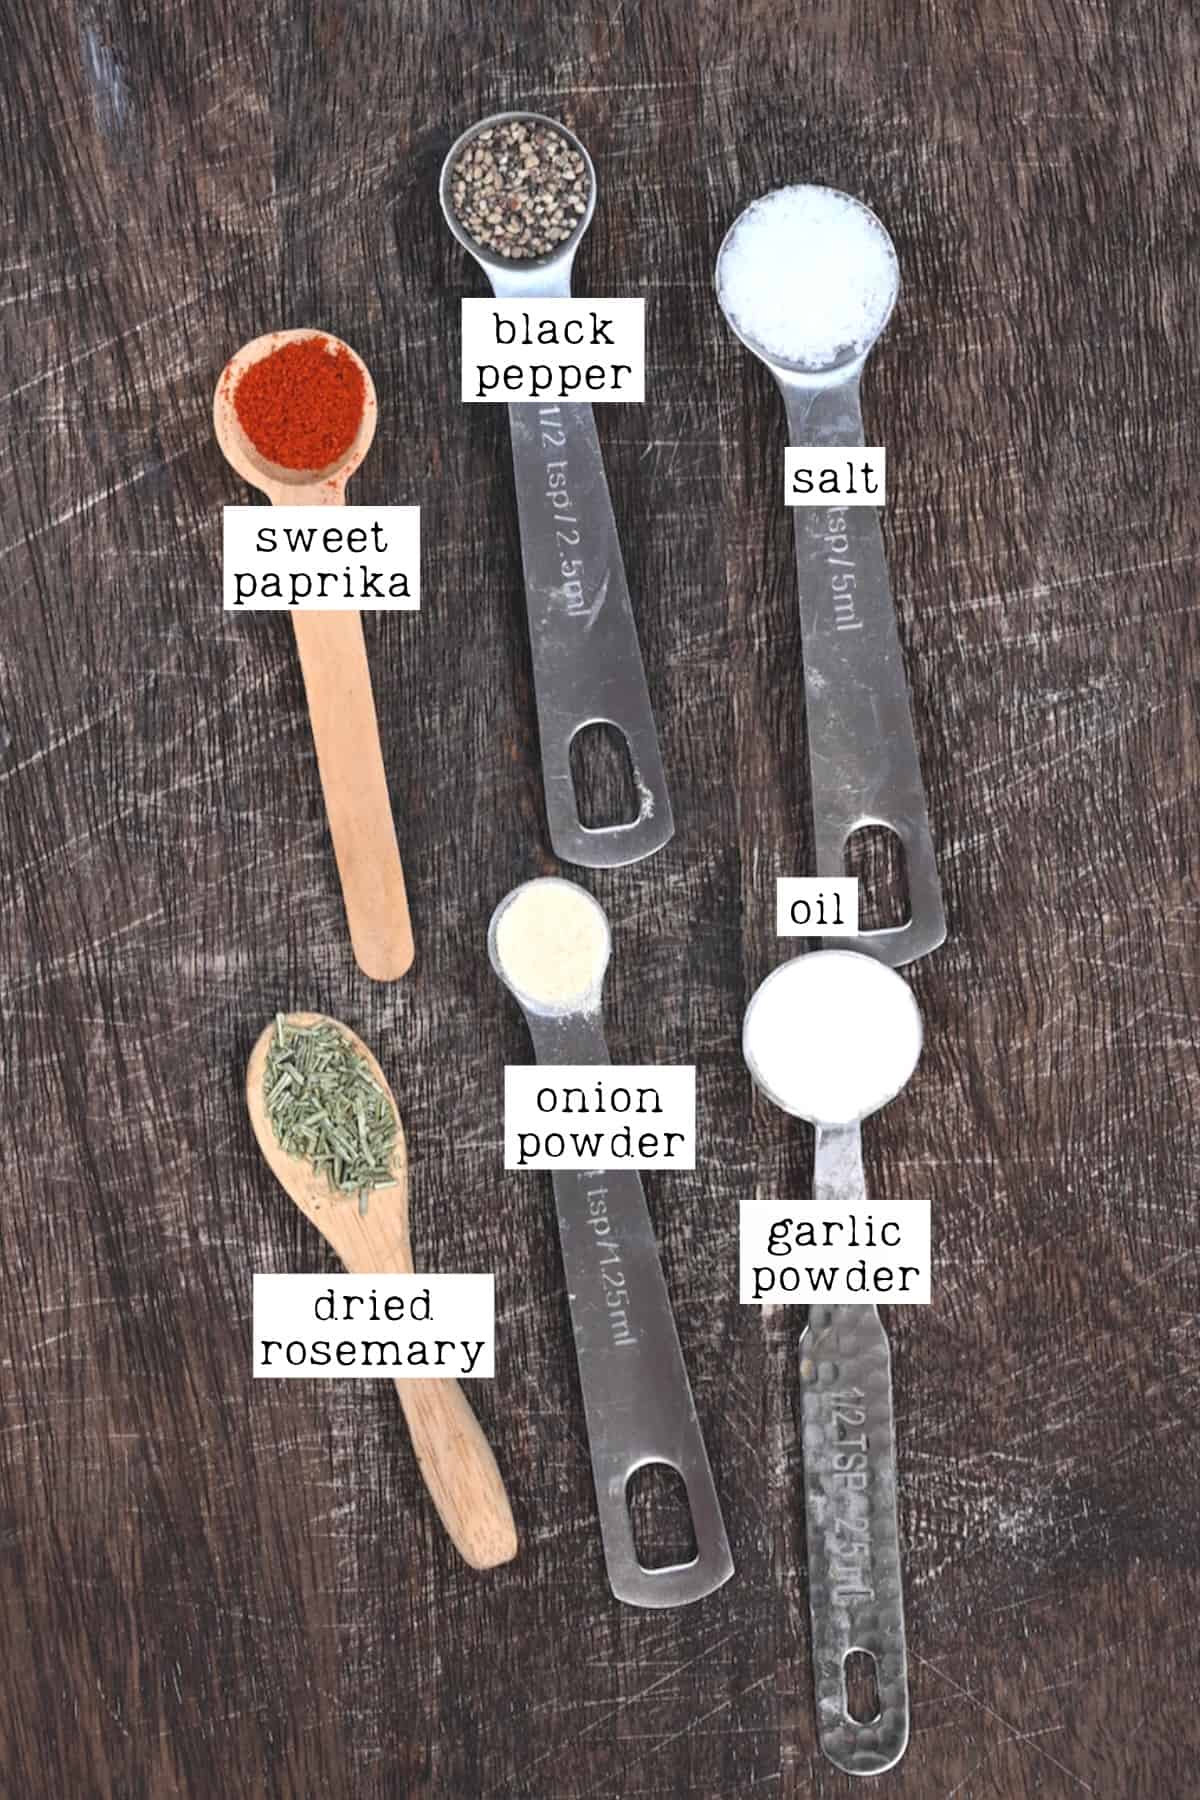 Ingredients for steak seasoning